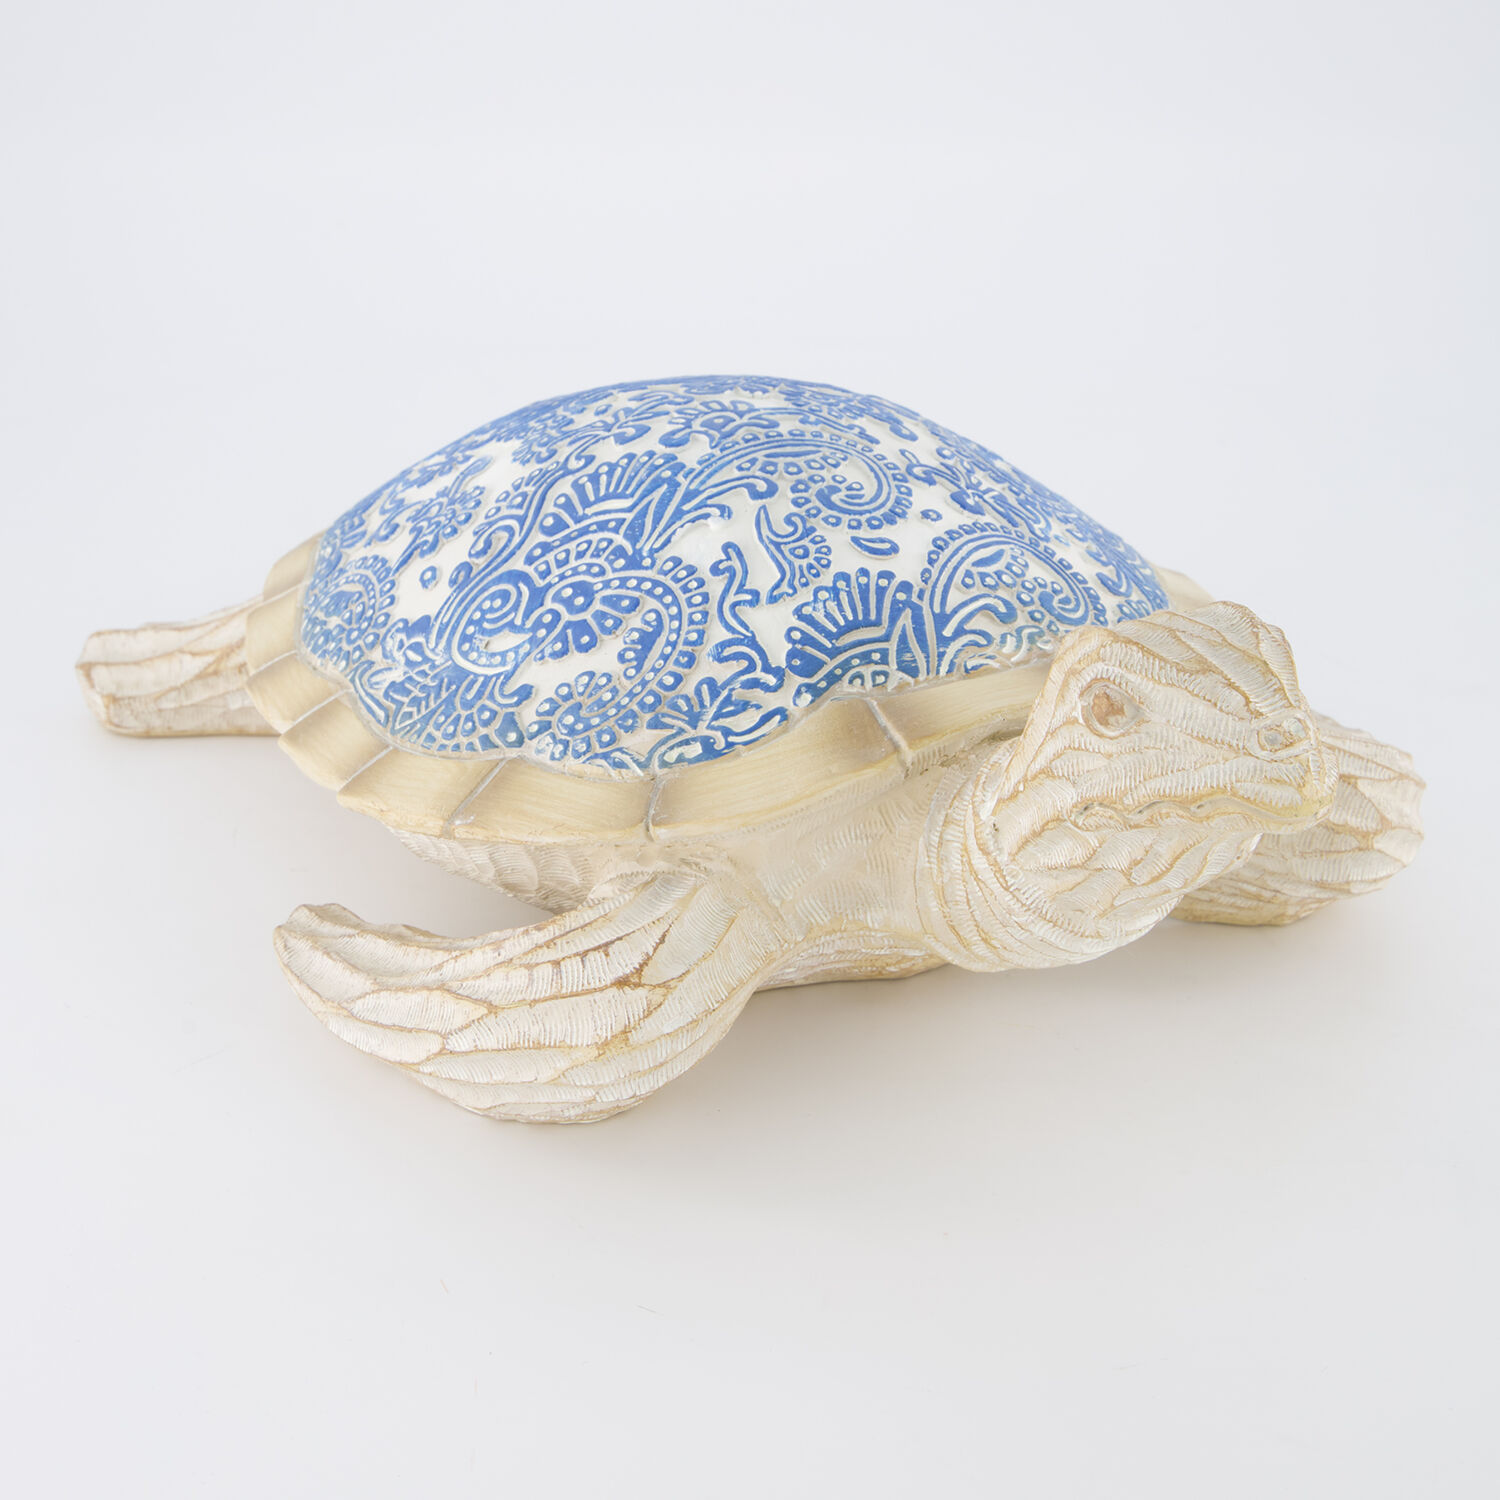 Декоративная фигурка сине-бежевого цвета в виде морской черепахи 12х37см Galt International пазлы galt пазл цифры 1105050